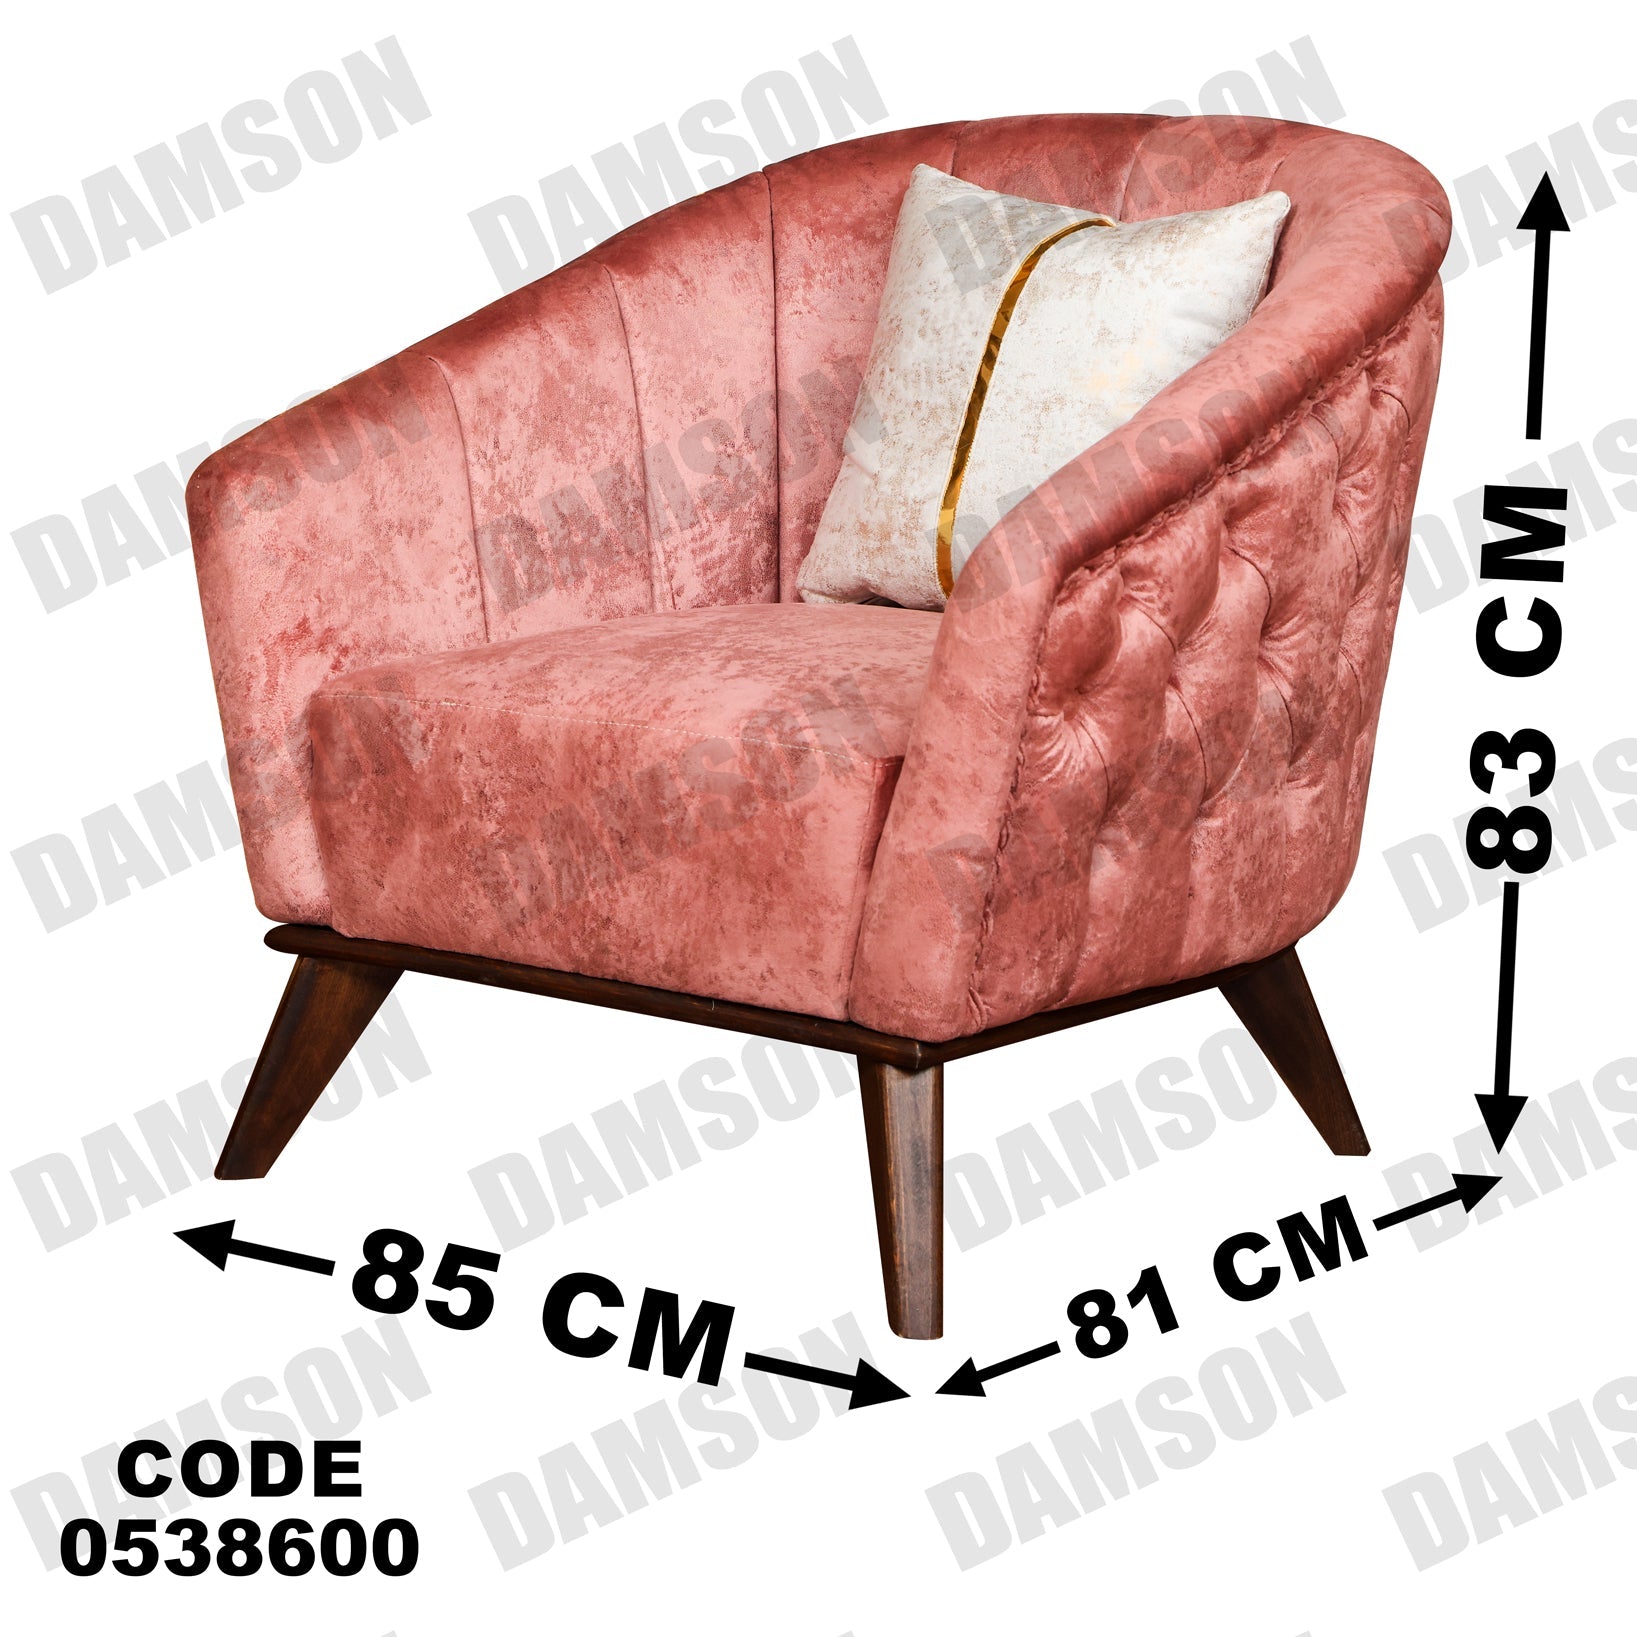 فوتية 2-386 - Damson Furnitureفوتية 2-386